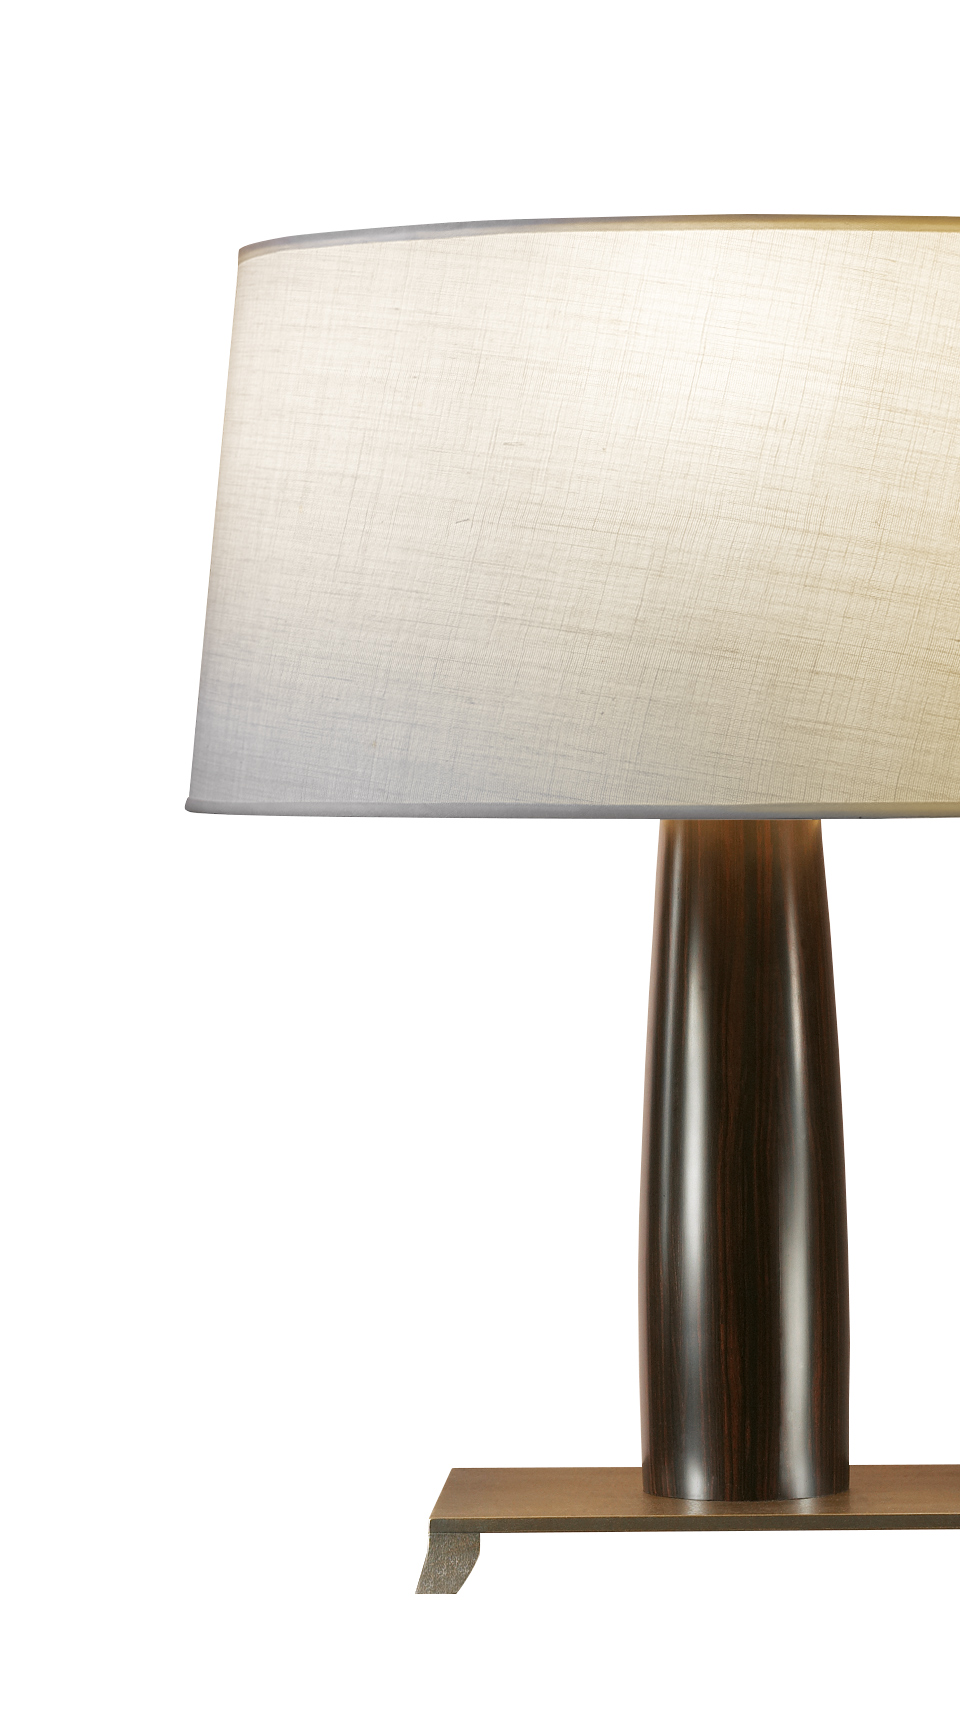 Pia è una lampada da tavolo con struttura in legno o rivestita in pelle con base in bronzo e paralume bordato a mano, del catalogo di Promemoria | Promemoria